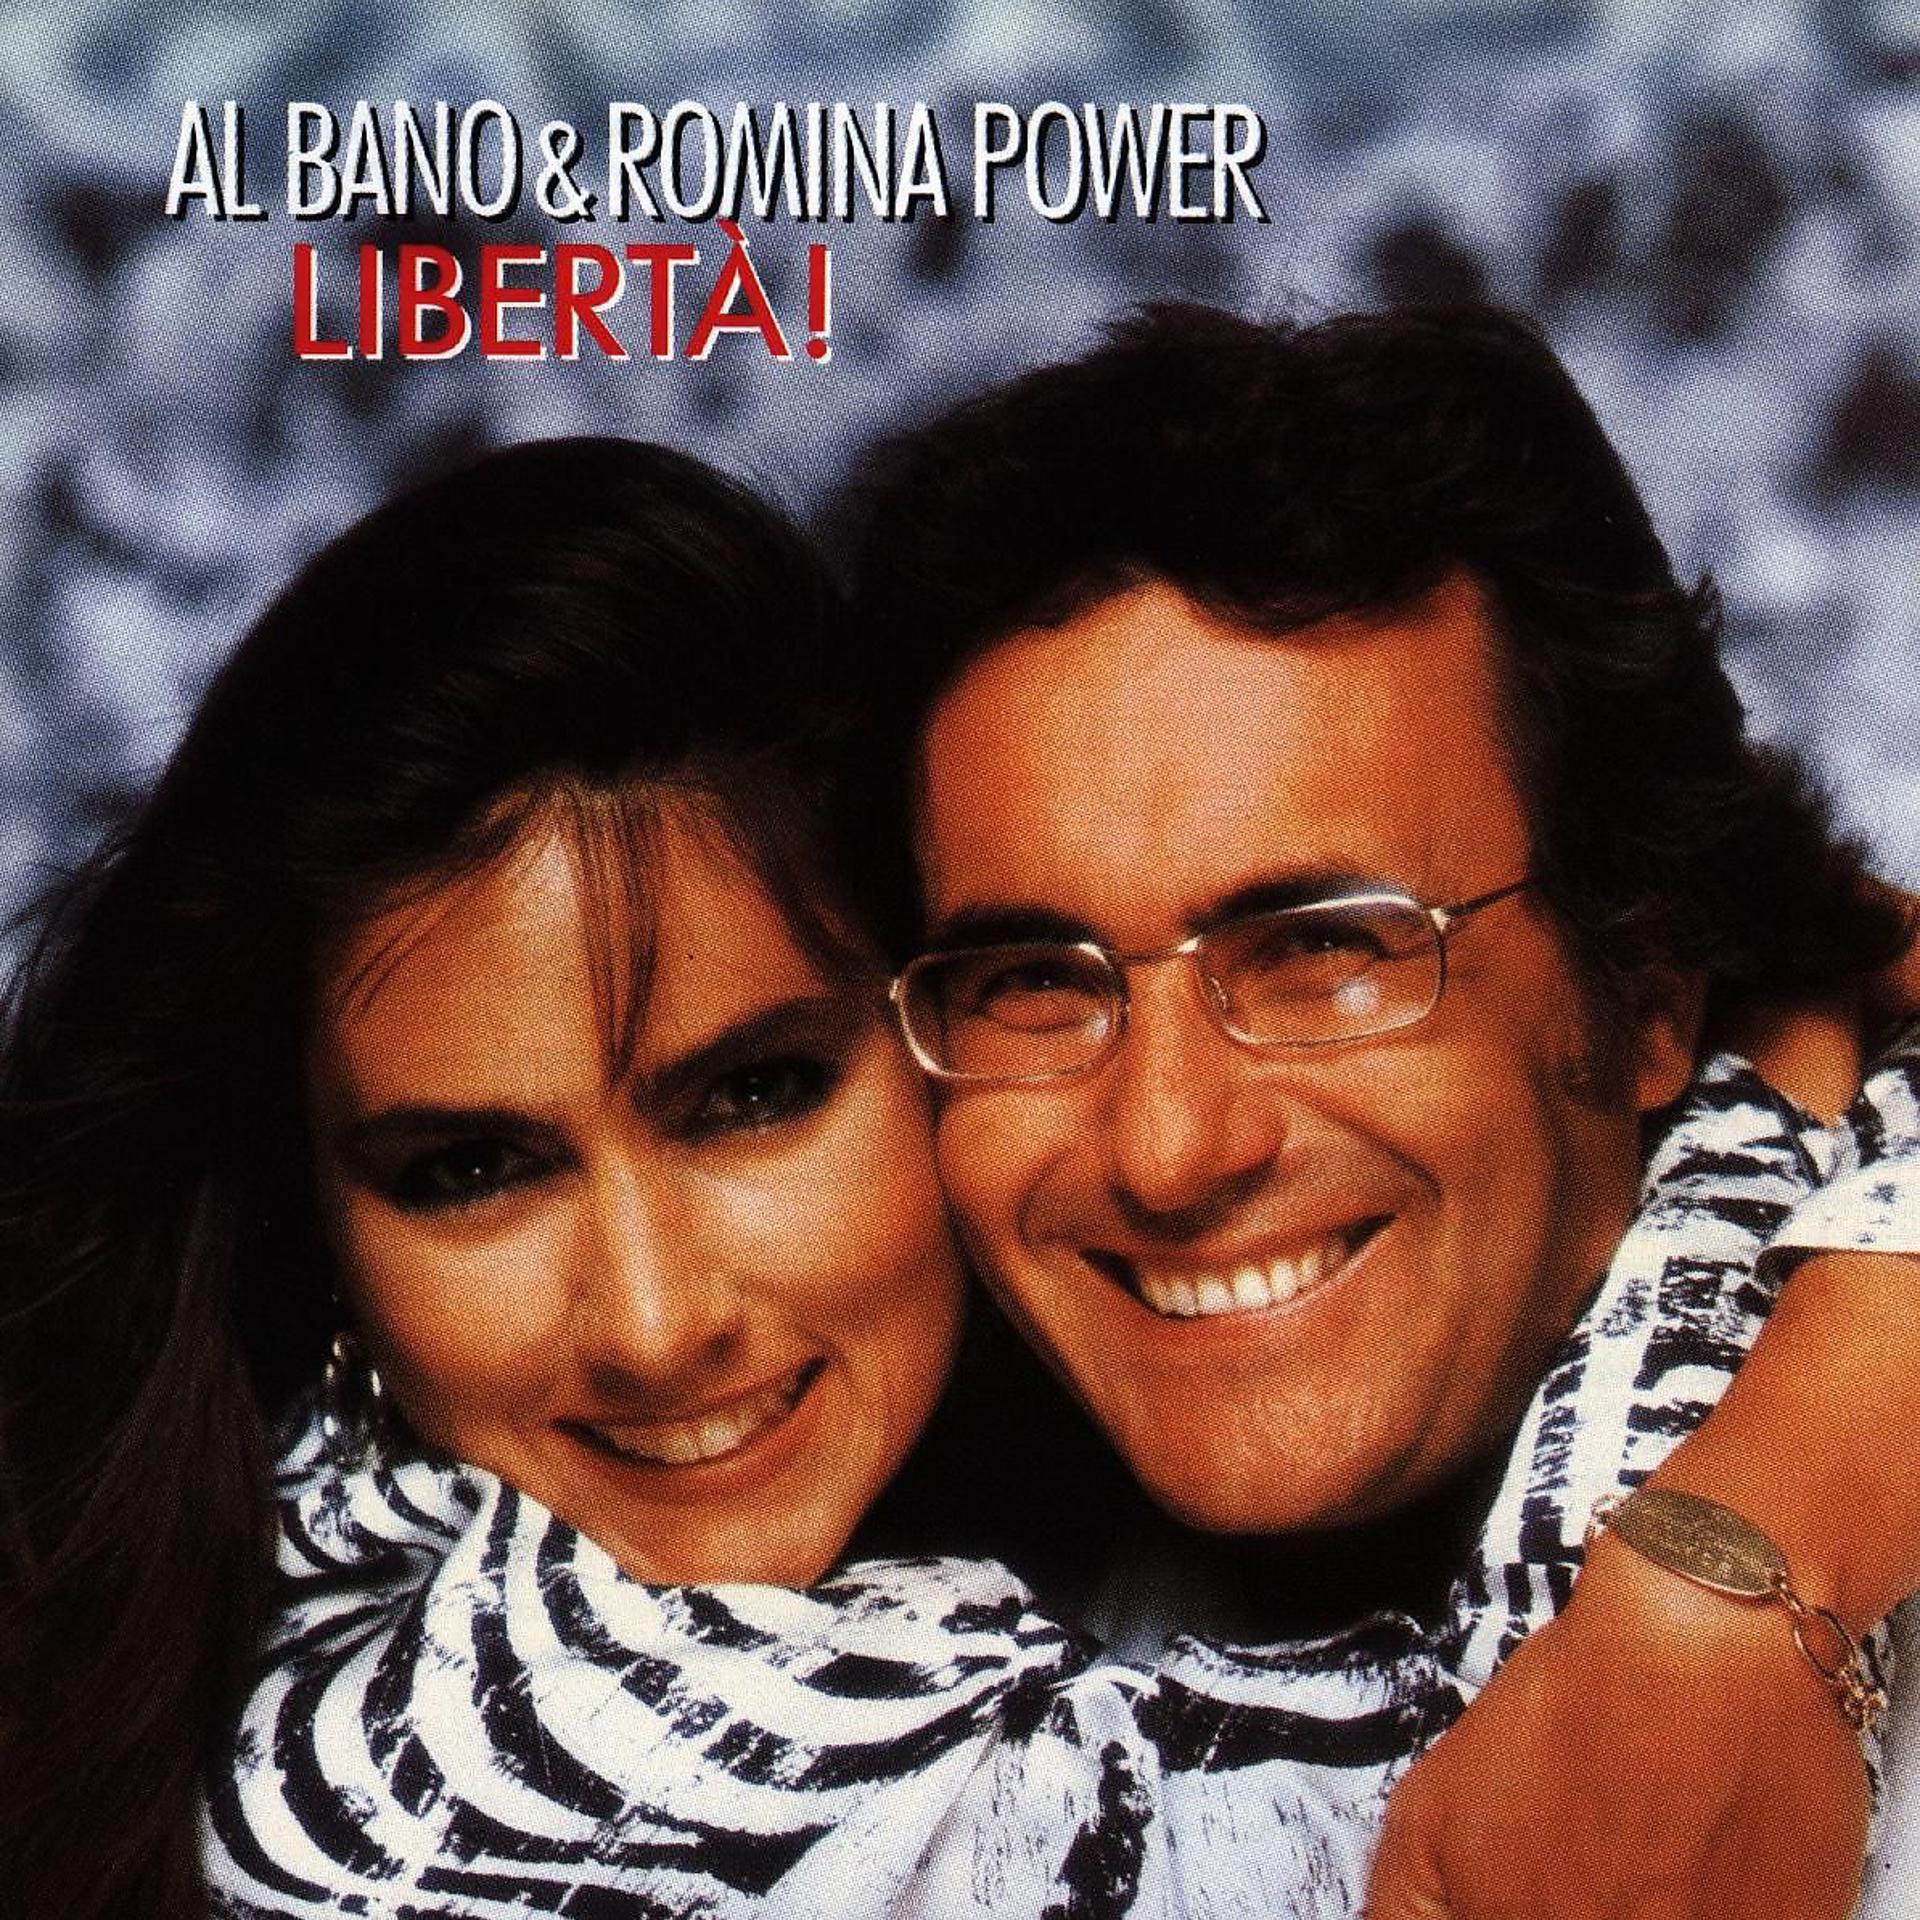 Аль Бано и Ромина Пауэр. Аль Бано и Ромина Liberta. Al bano & Romina Power Liberta 1987 LP. Аль Бано и Ромина - Либерта. Аль бано пауэр либерта